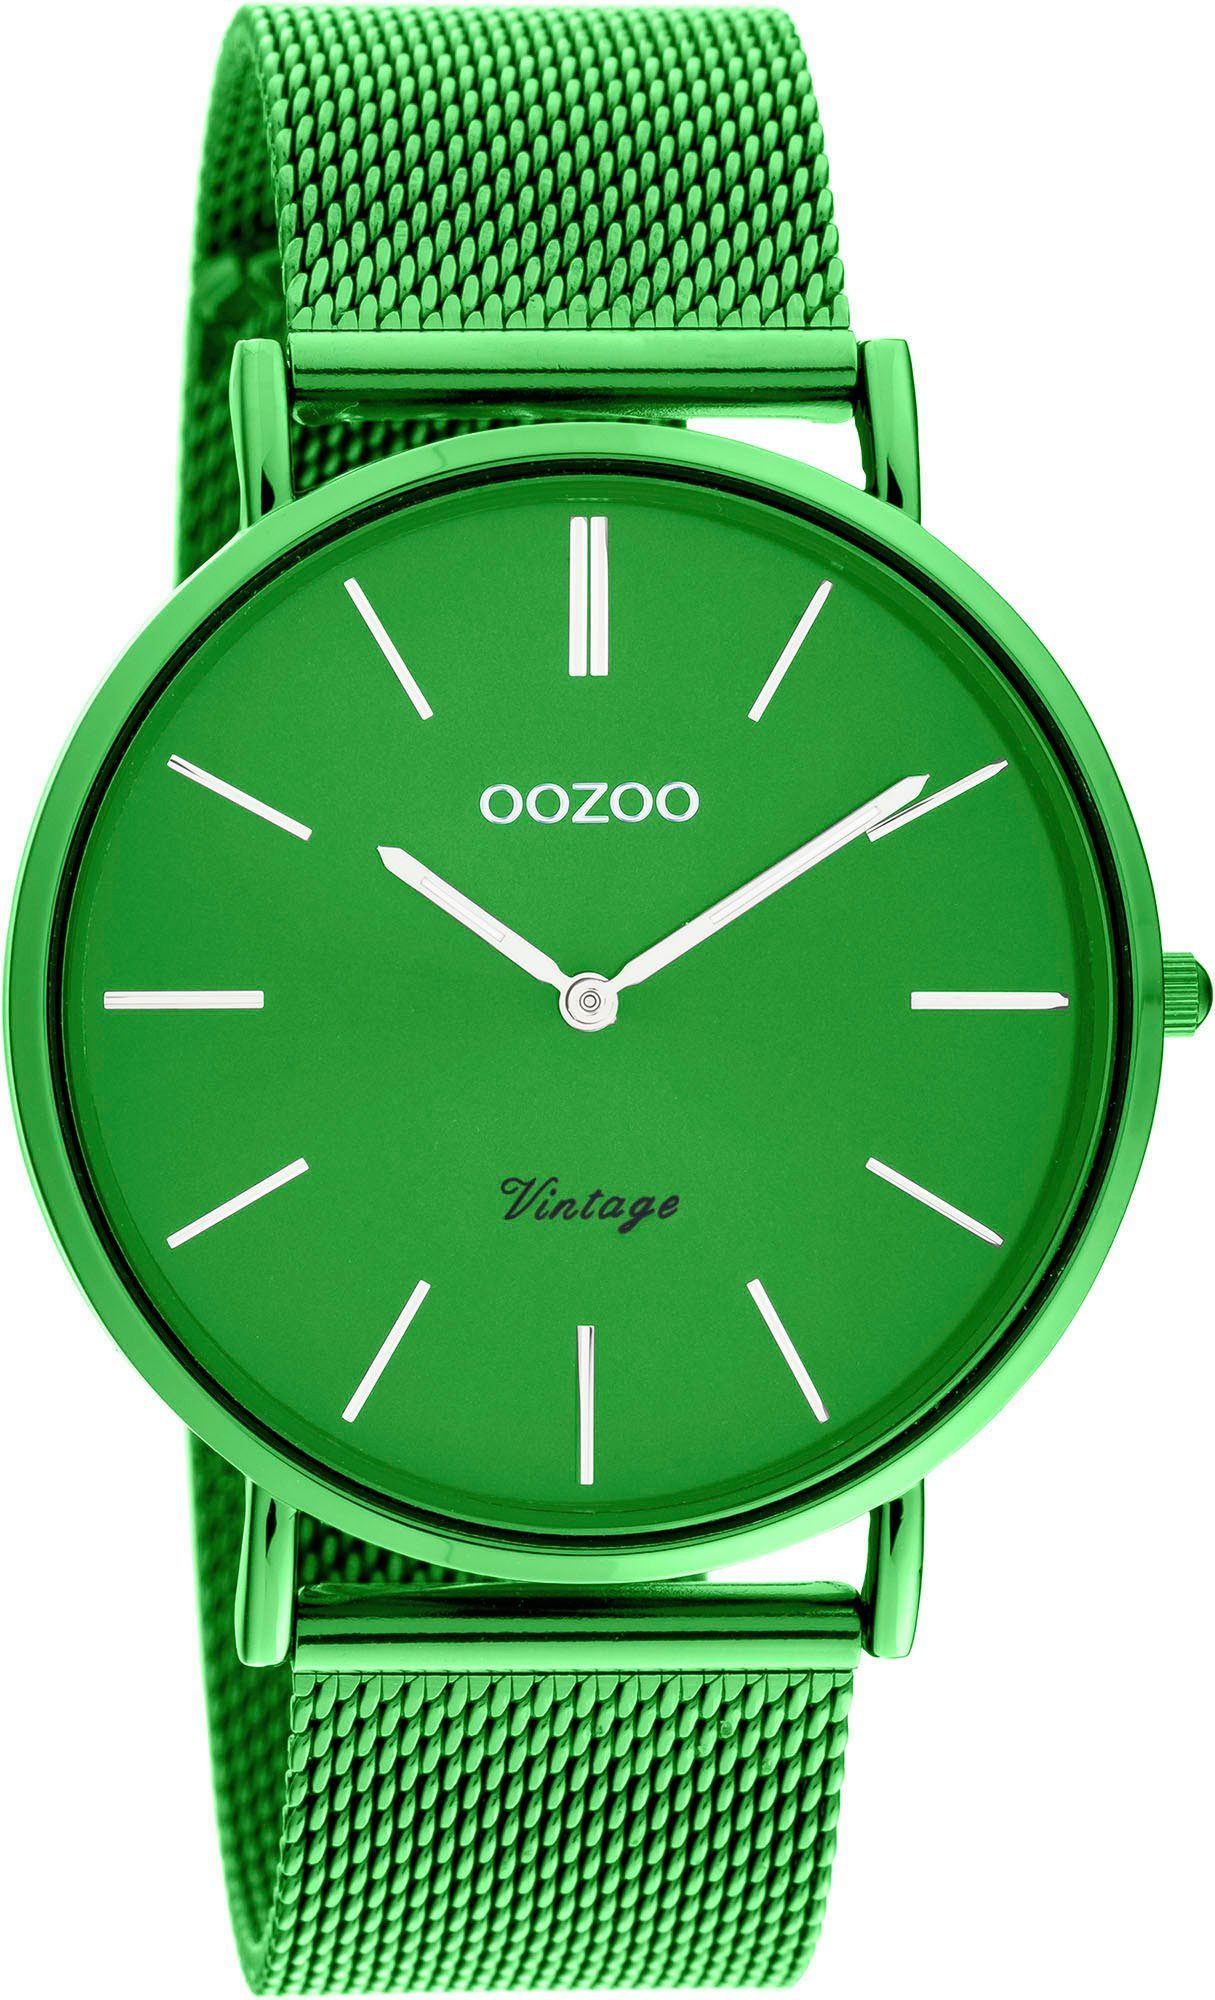 OOZOO Quarzuhr C20273, IP-beschichtet, Ø grün Metallgehäuse, ca. 40 mm